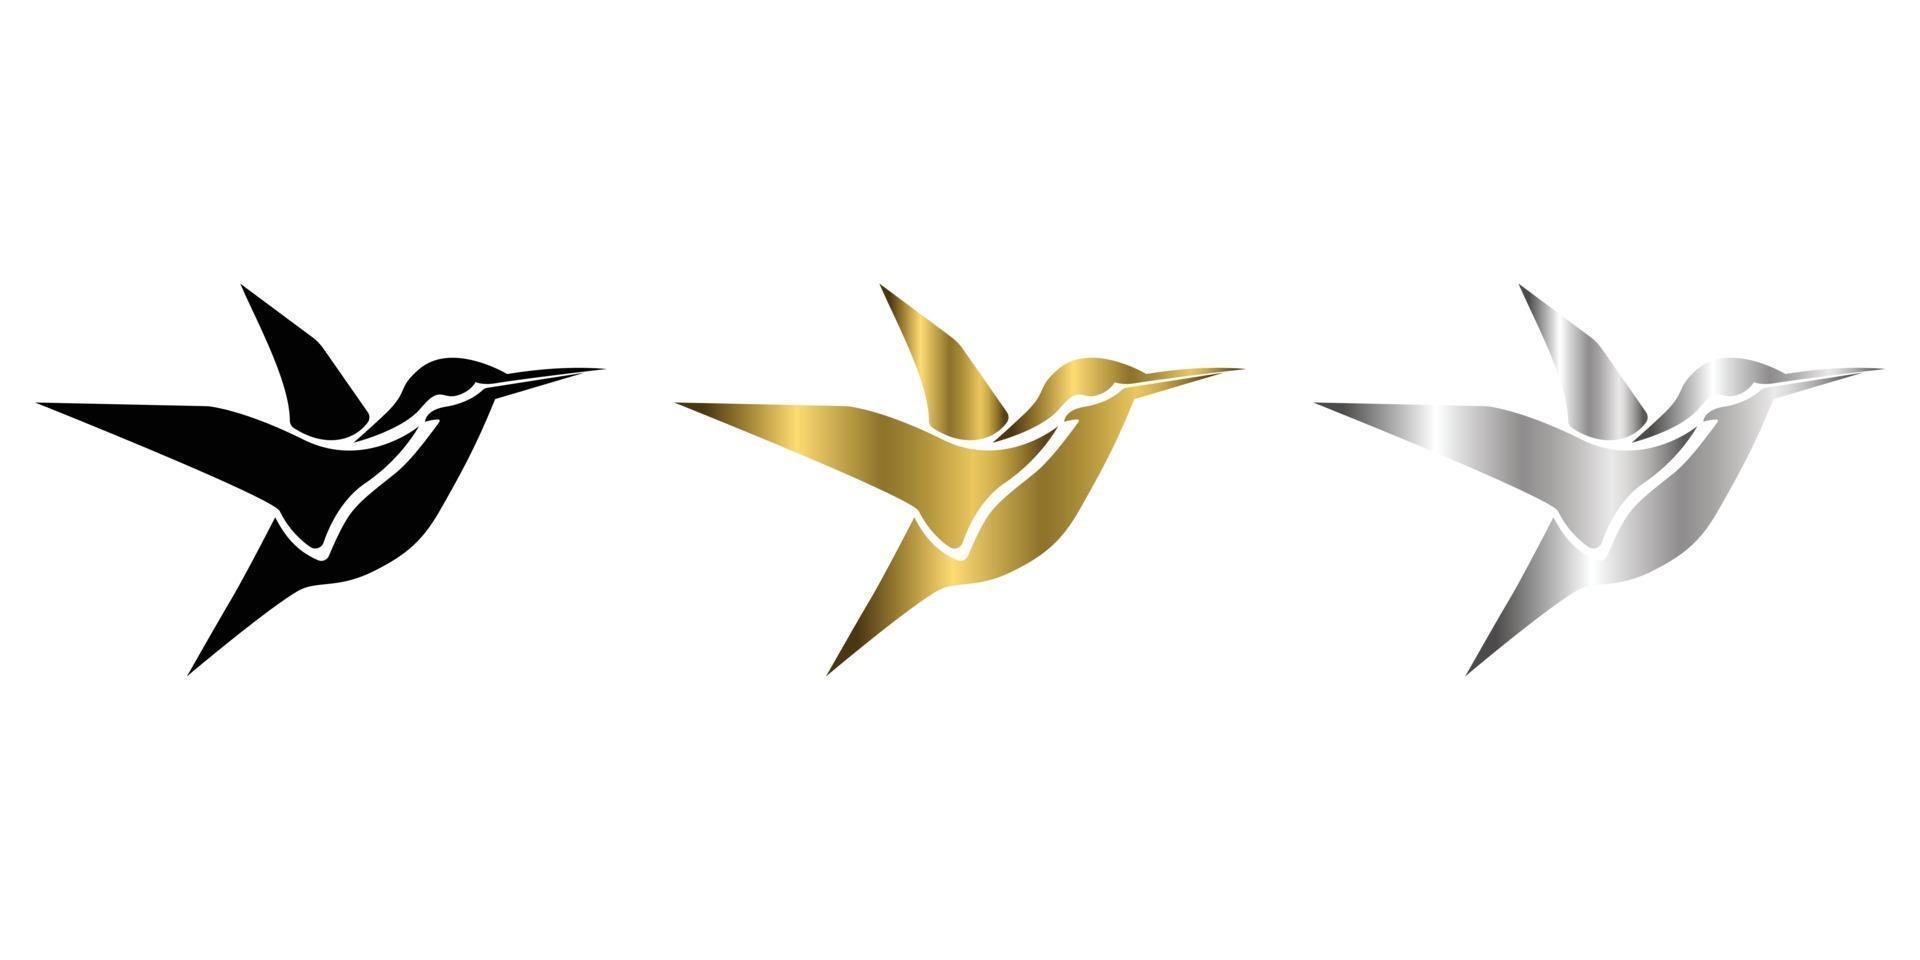 tre colori nero oro argento illustrazione vettoriale su uno sfondo bianco di colibrì volanti adatti per creare loghi